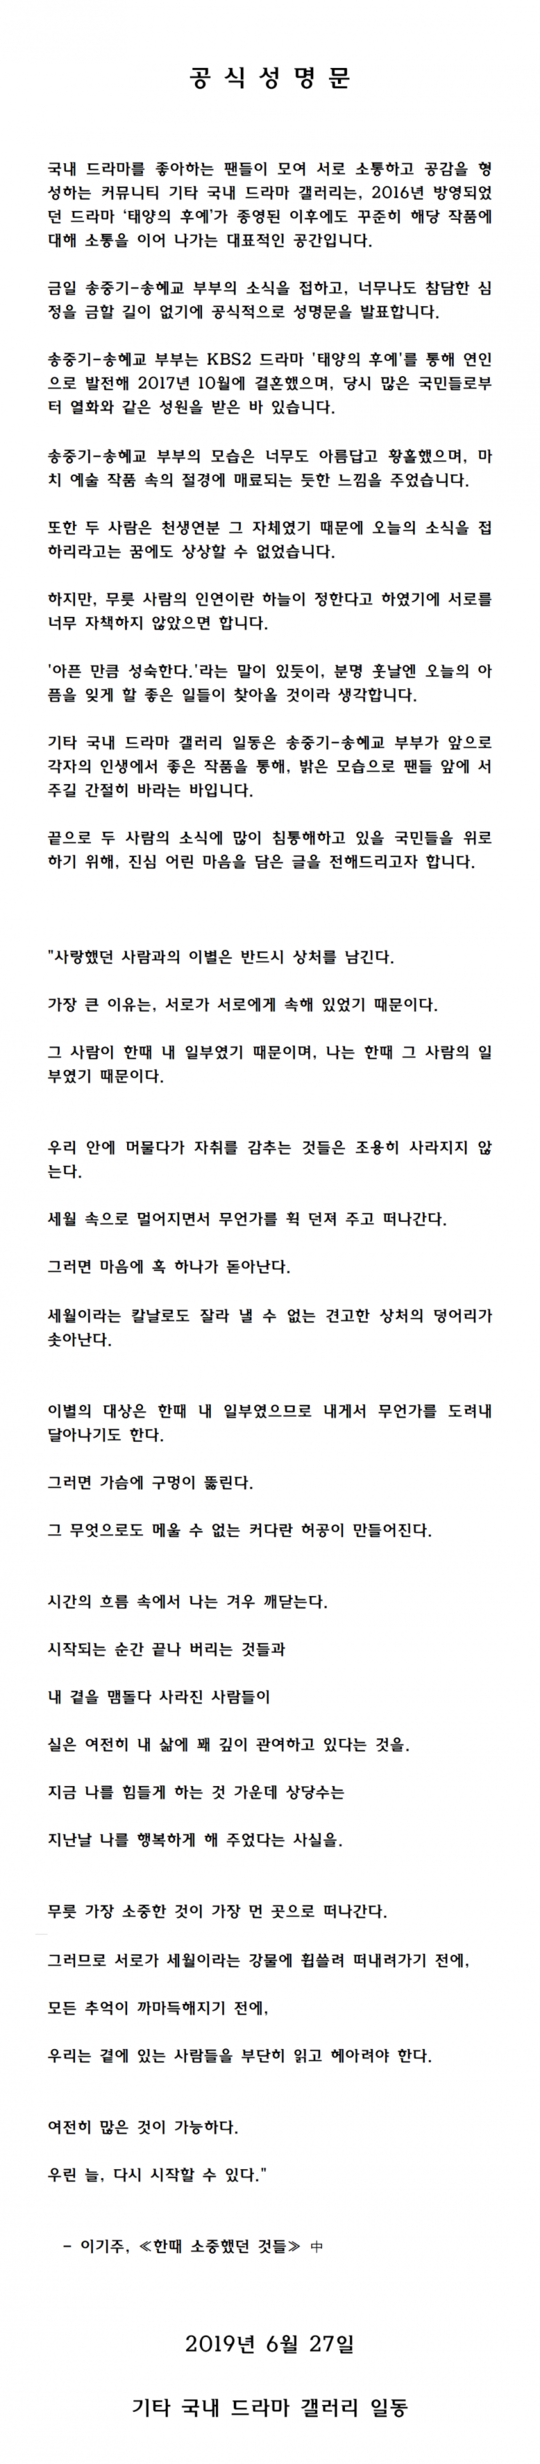 [전문]'송중기·송혜교 아름답고 황홀'…파경 소식에 팬들 '자책 말길' 성명서